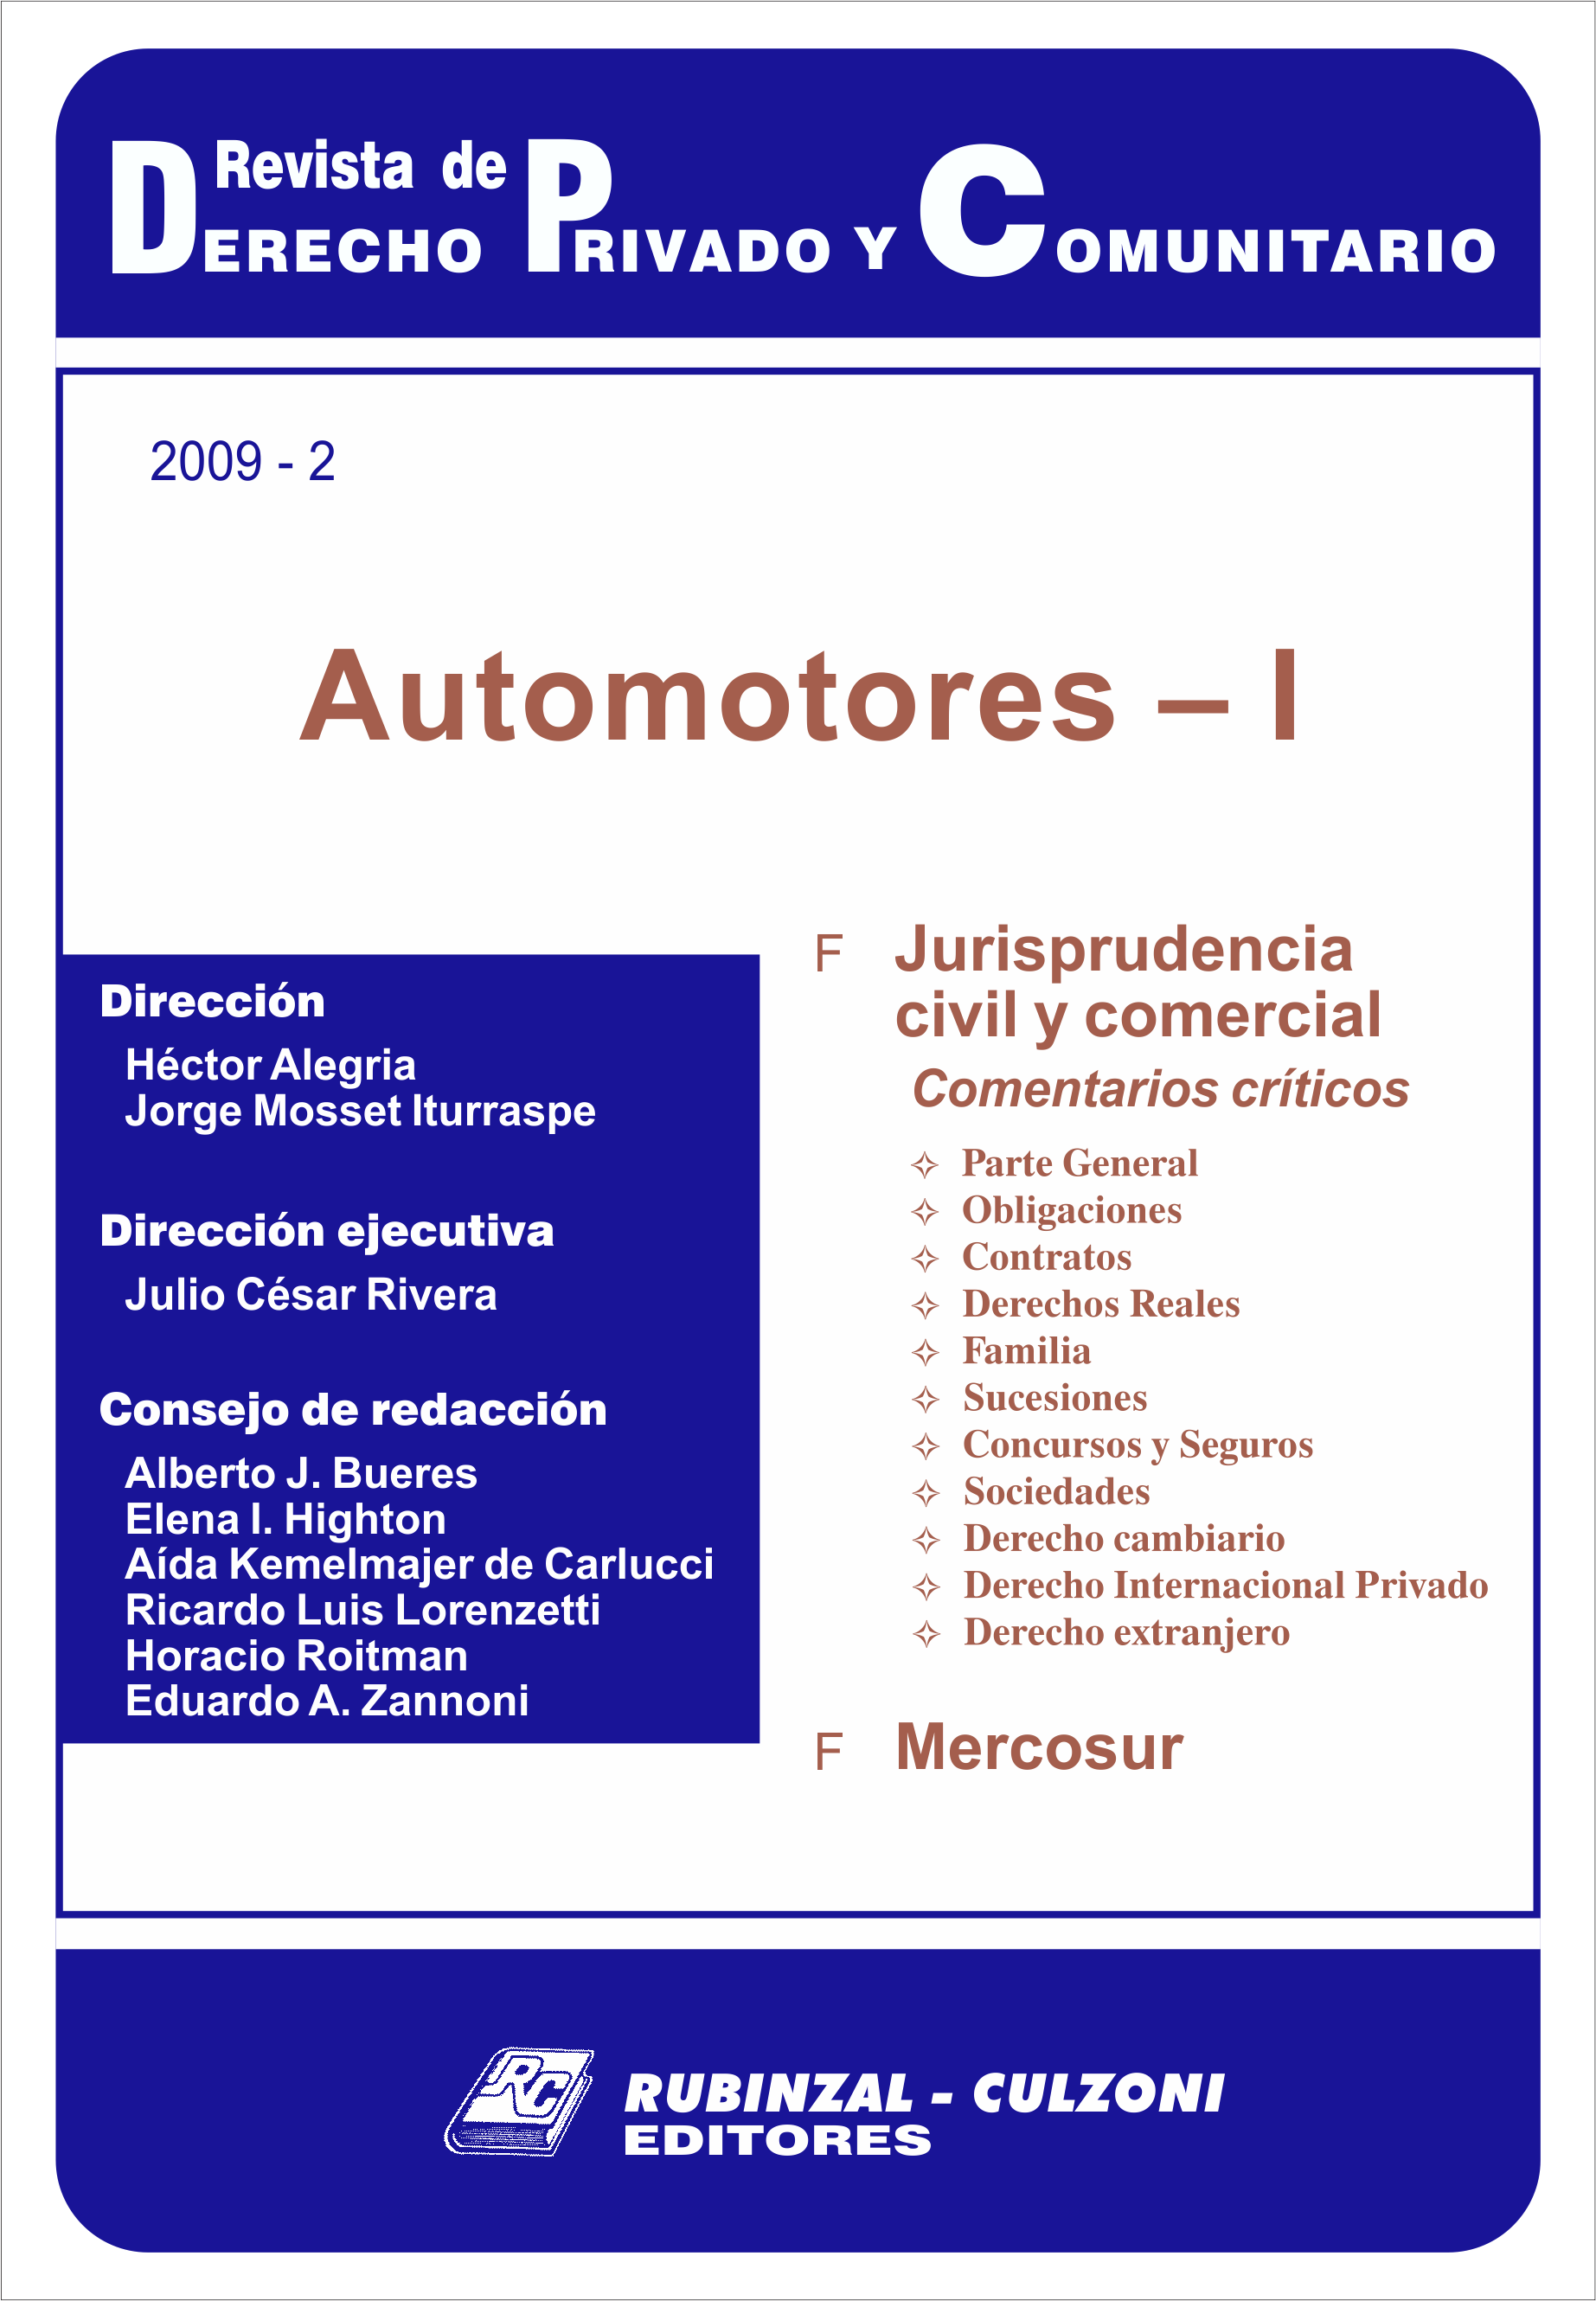 Revista de Derecho Privado y Comunitario - Automotores - I.